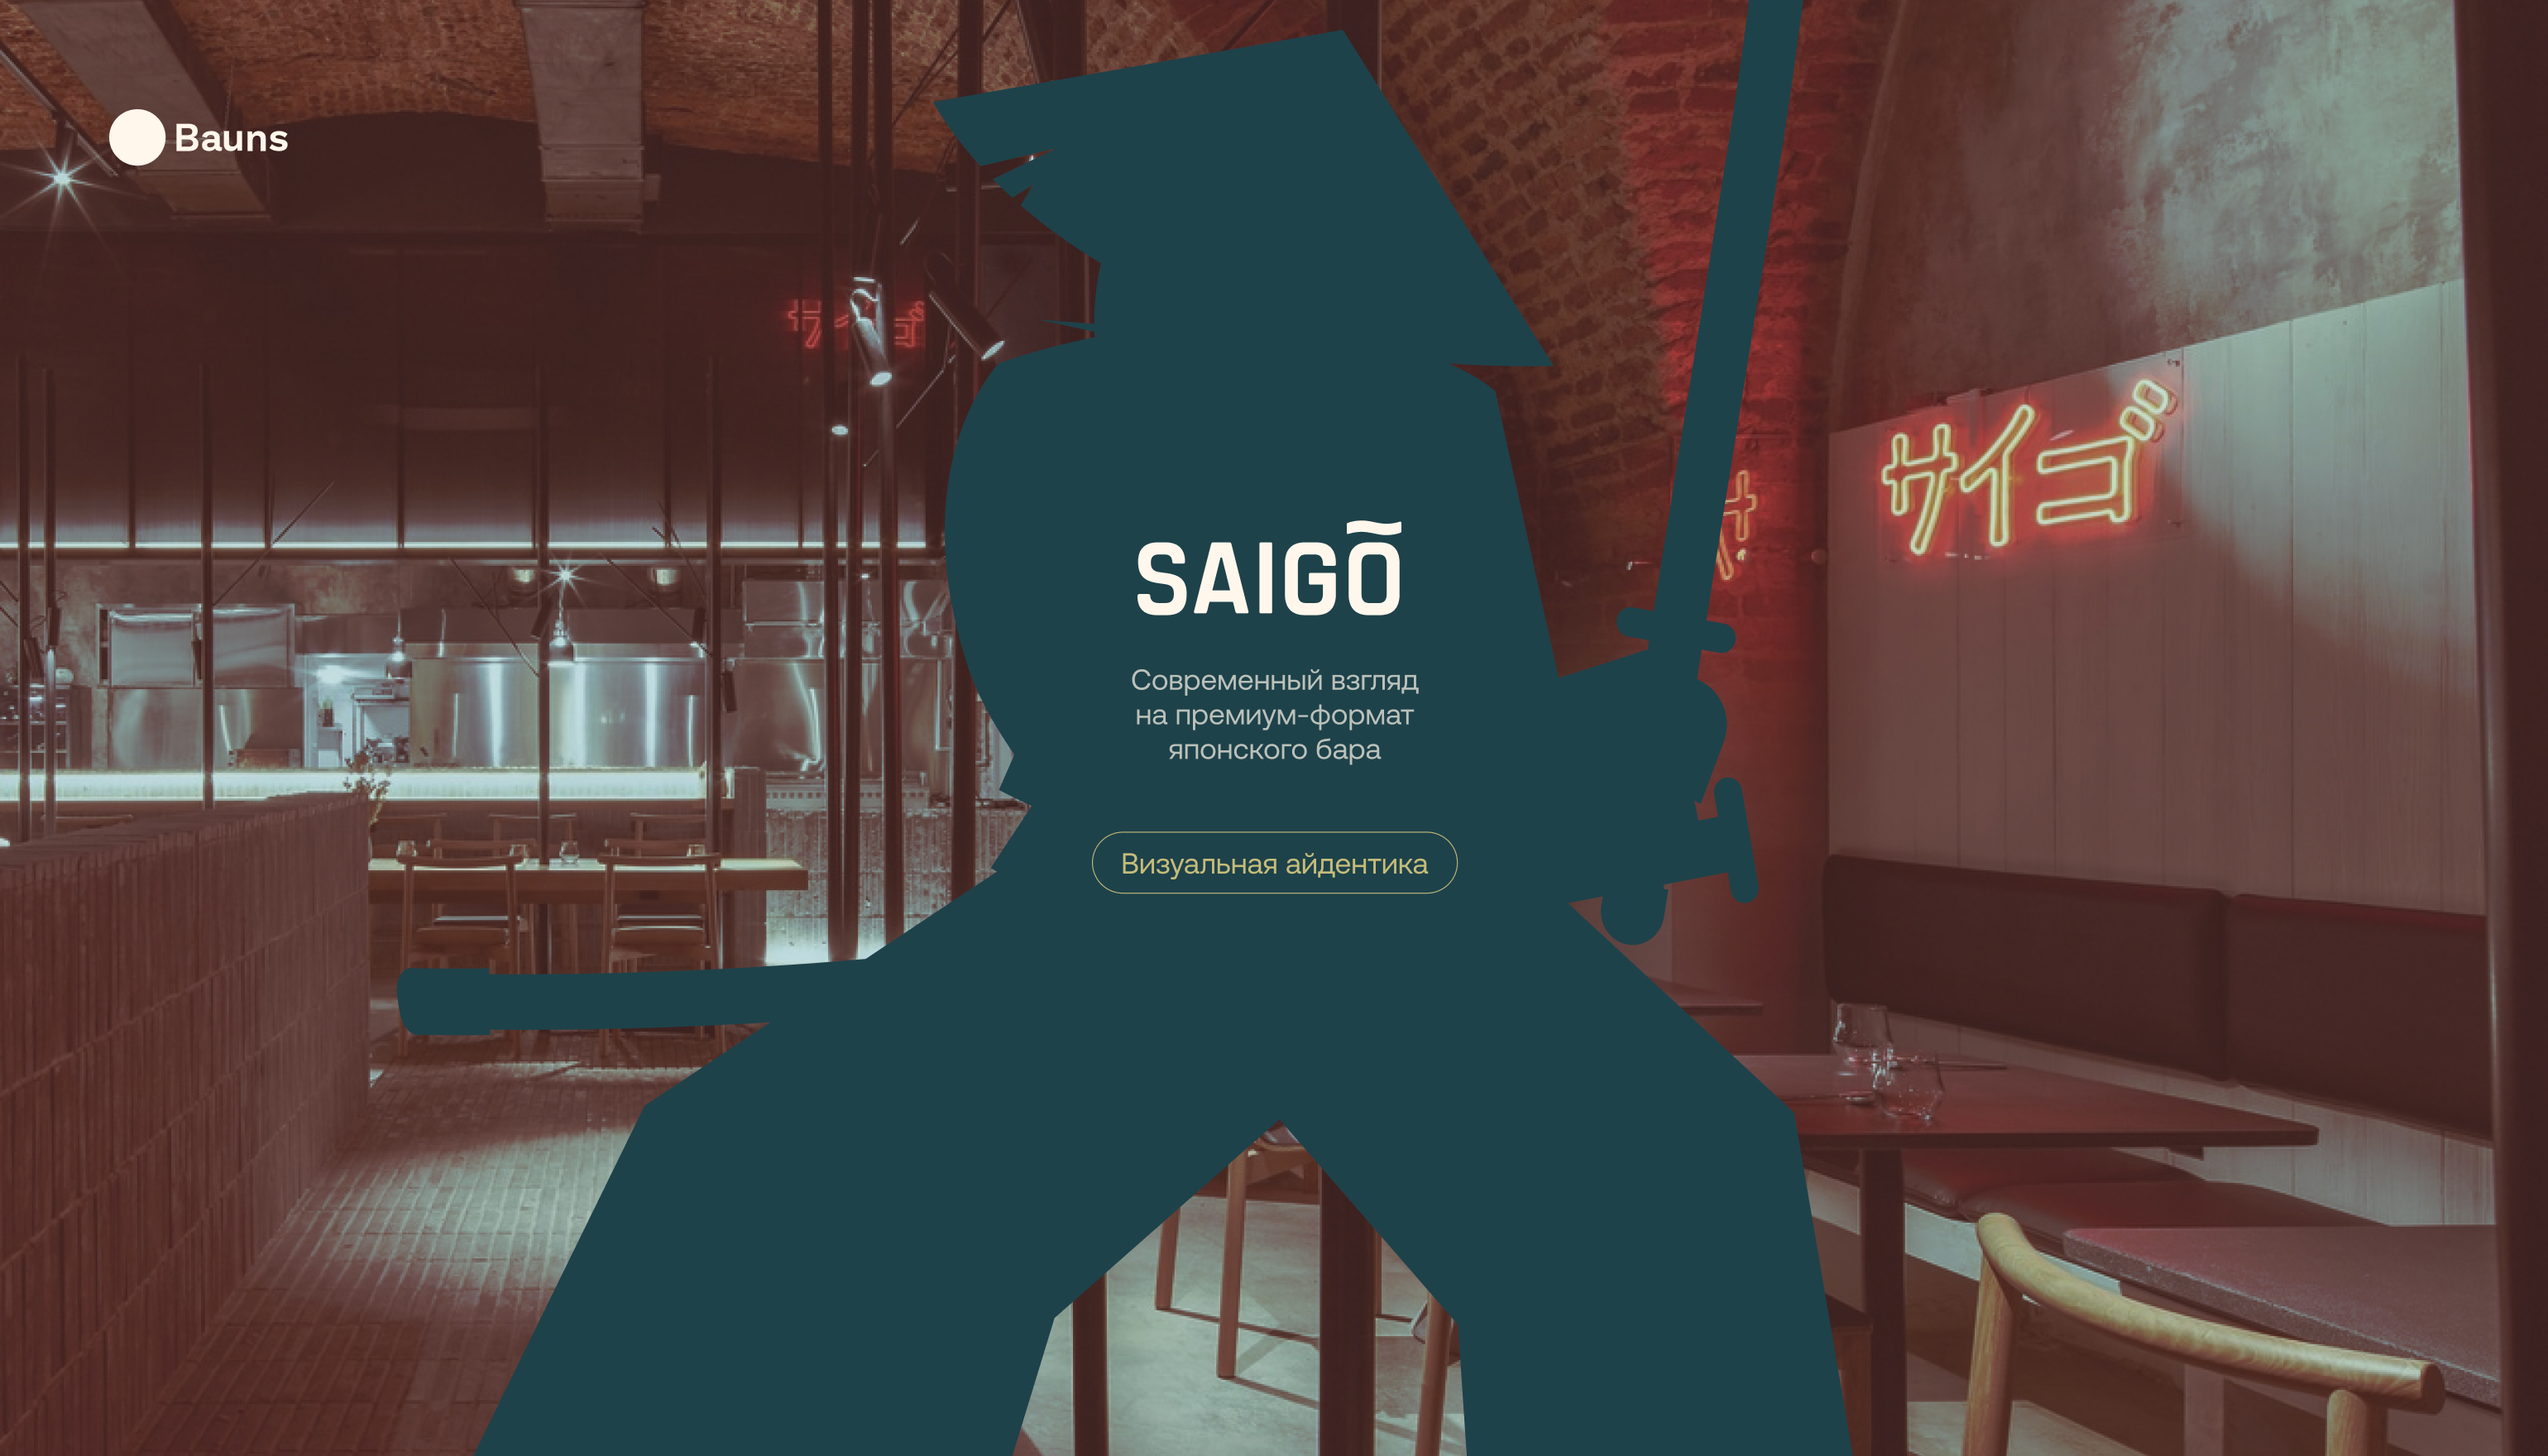 Лого & Айдентика для ресторана Saigo — Изображение №1 — Брендинг, Иллюстрация на Dprofile